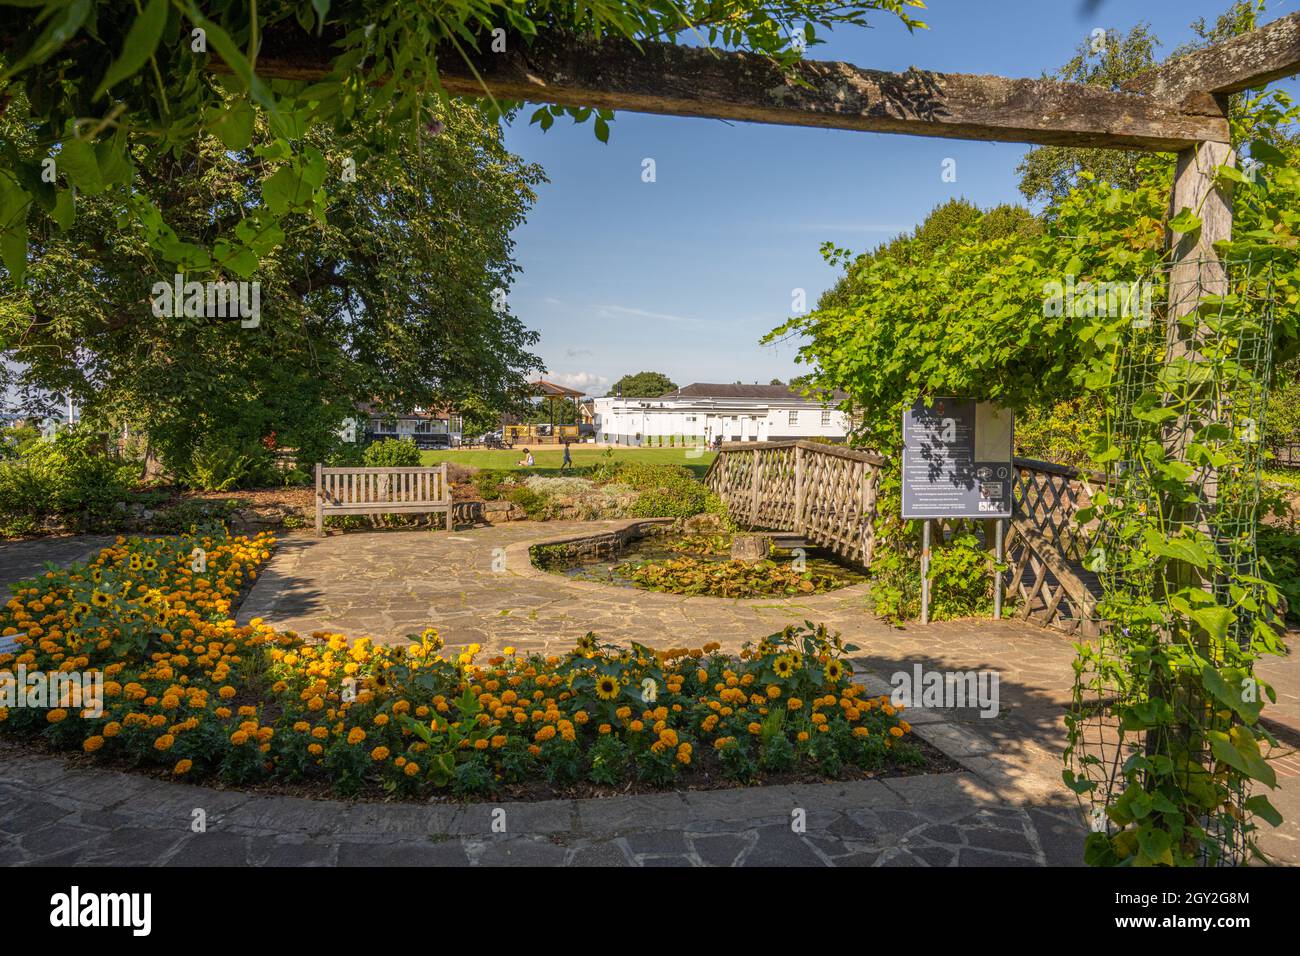 Vine Gardens at Sevenoakes cricket Club, Sevenoakes kent. Stock Photo